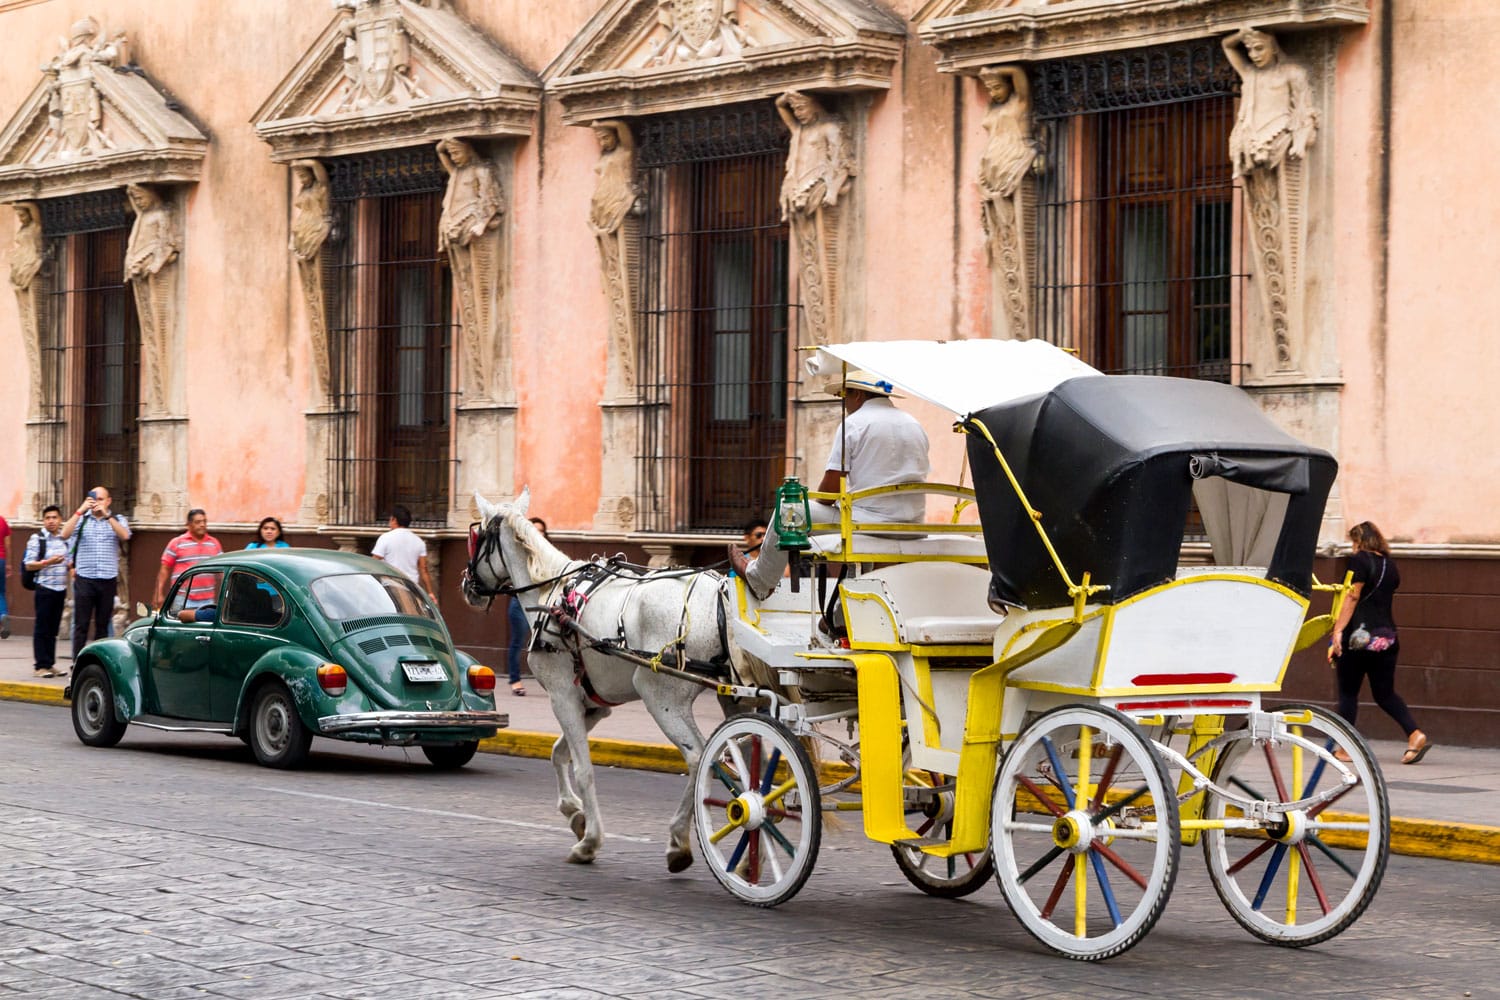 Carruajes de caballos con pasajeros en una calle de la ciudad de Mérida, México.